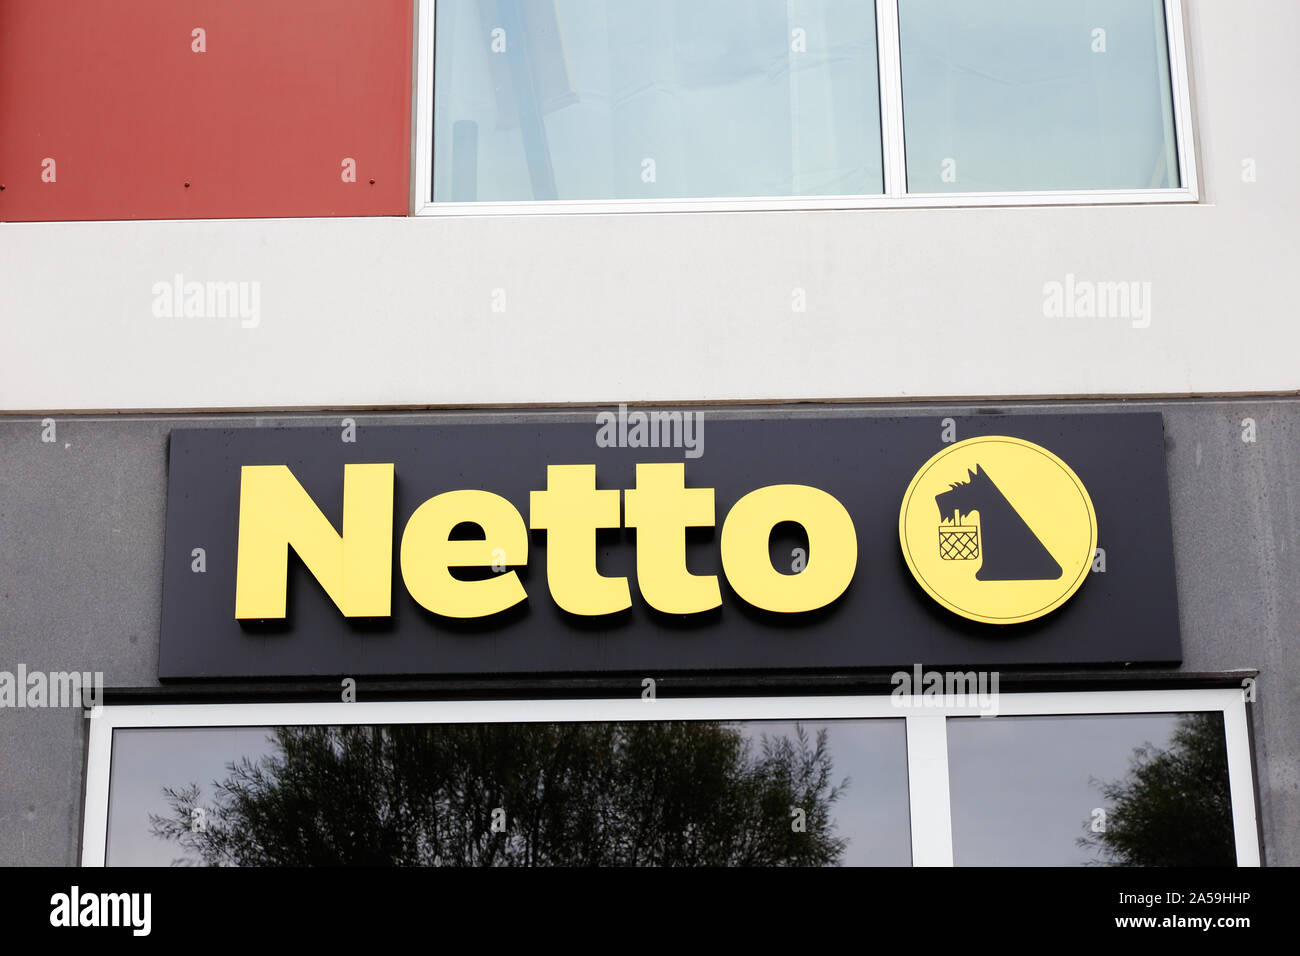 Copenhagen, Denmark - September 4, 2019: The sign and logo outside the Netto supermarket. Stock Photo